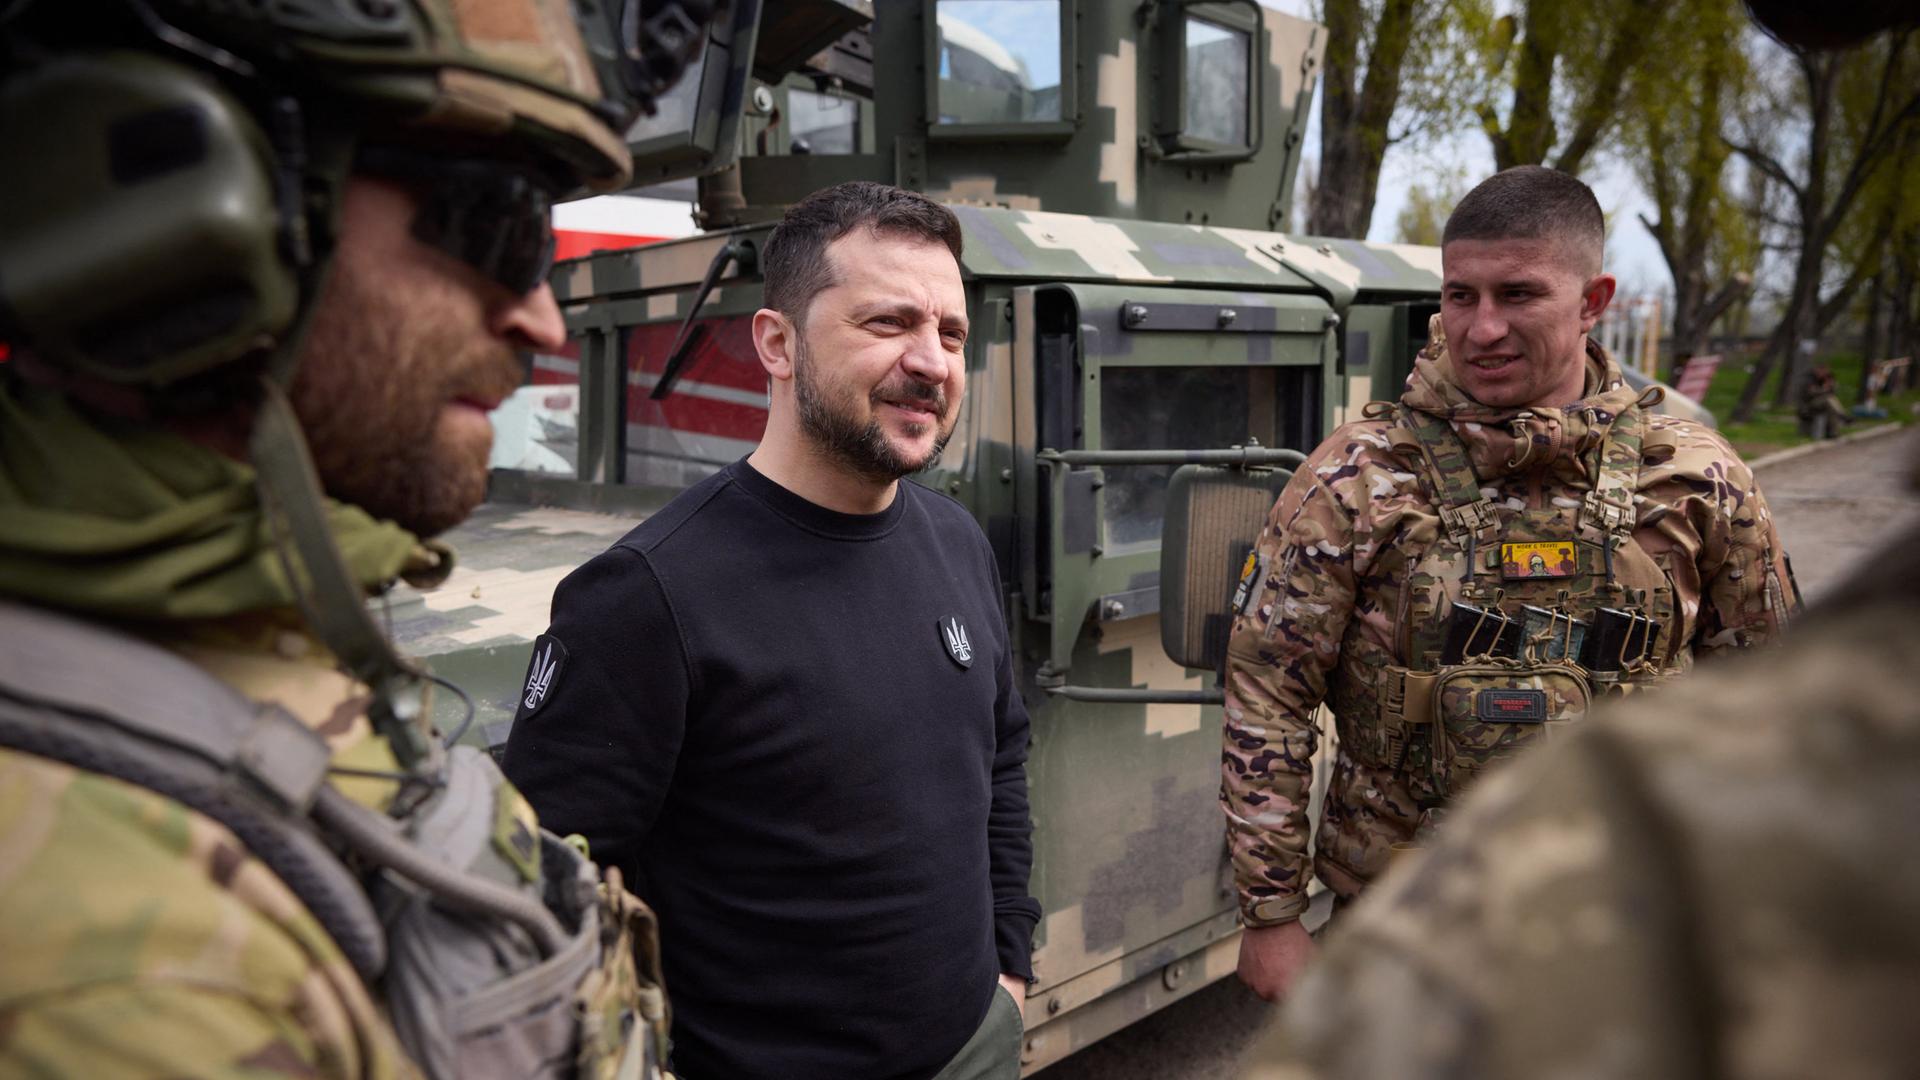 Präsident Selenskyj steht mit Soldaten zusammen und unterhält sich. Er hat einen schwarzen Pullover an.